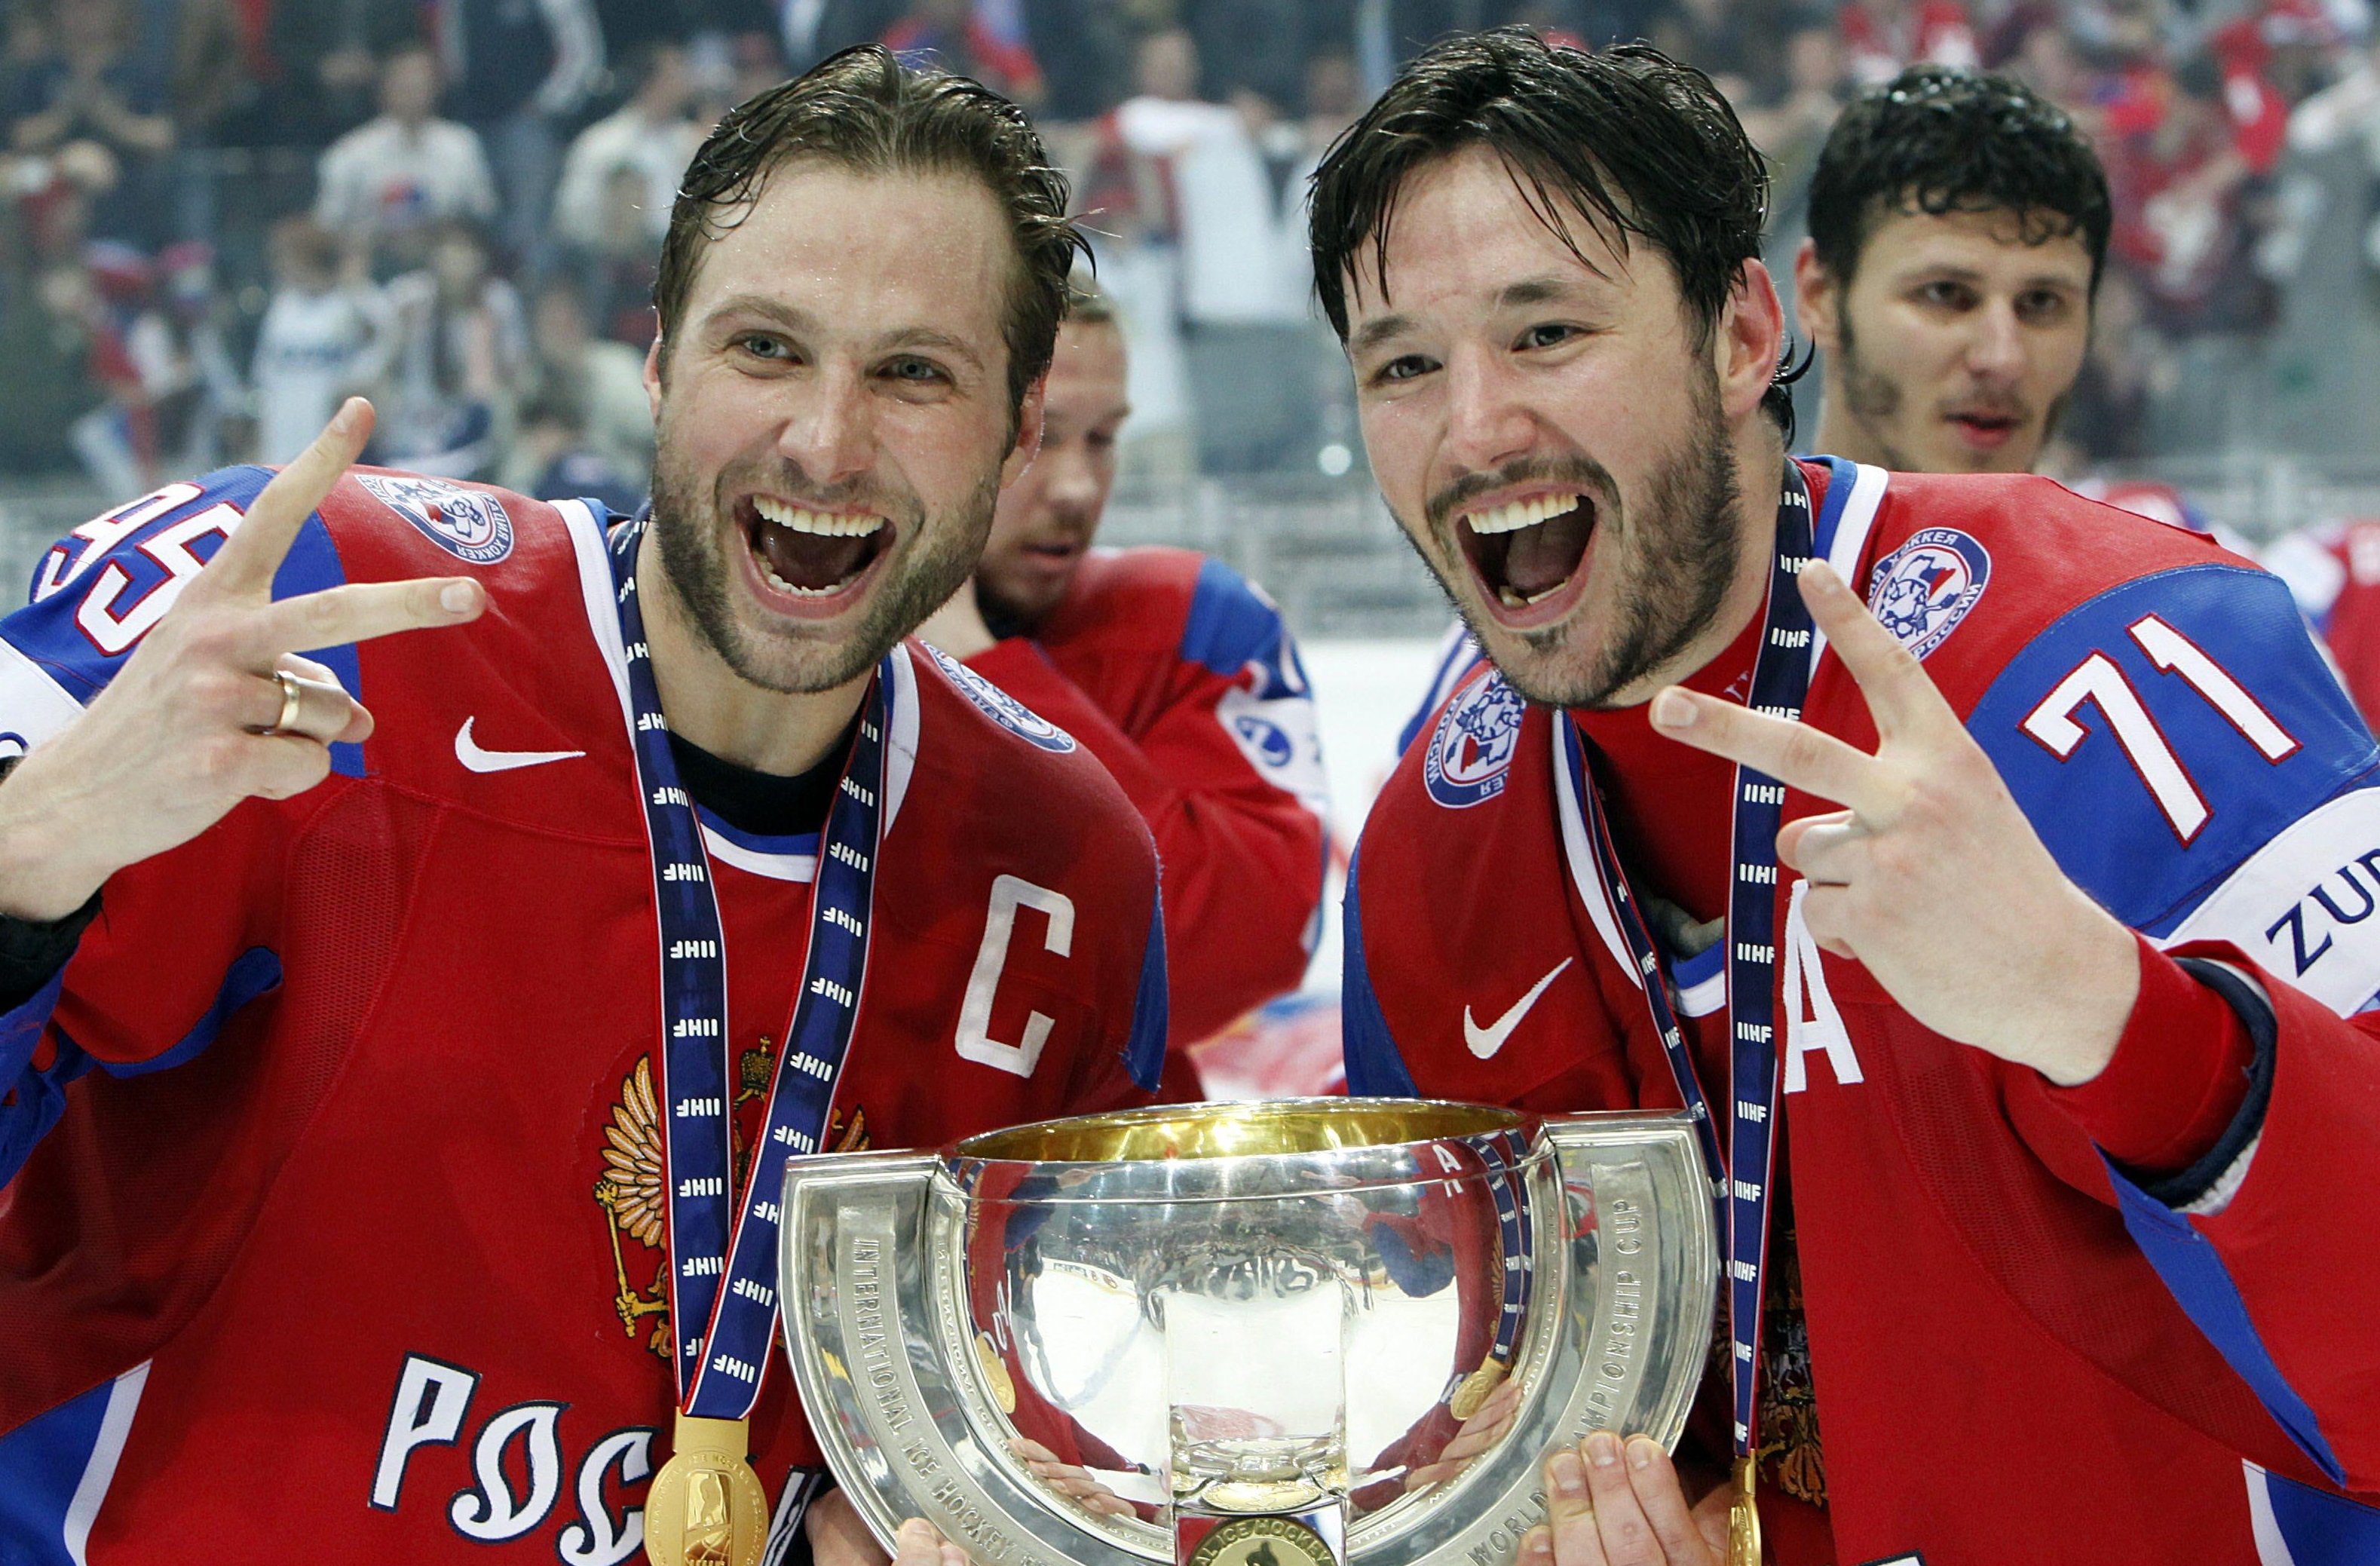 Ruskí hokejisti kapitán Alexej Morozov (vľavo) a Iľja Kovaľčuk držia trofej majstrov sveta po zisku zlatých medailí na hokejových MS vo švajčiarskom Berne 10. mája 2009. Rusi vo finále porazili Kanadu 2:1.